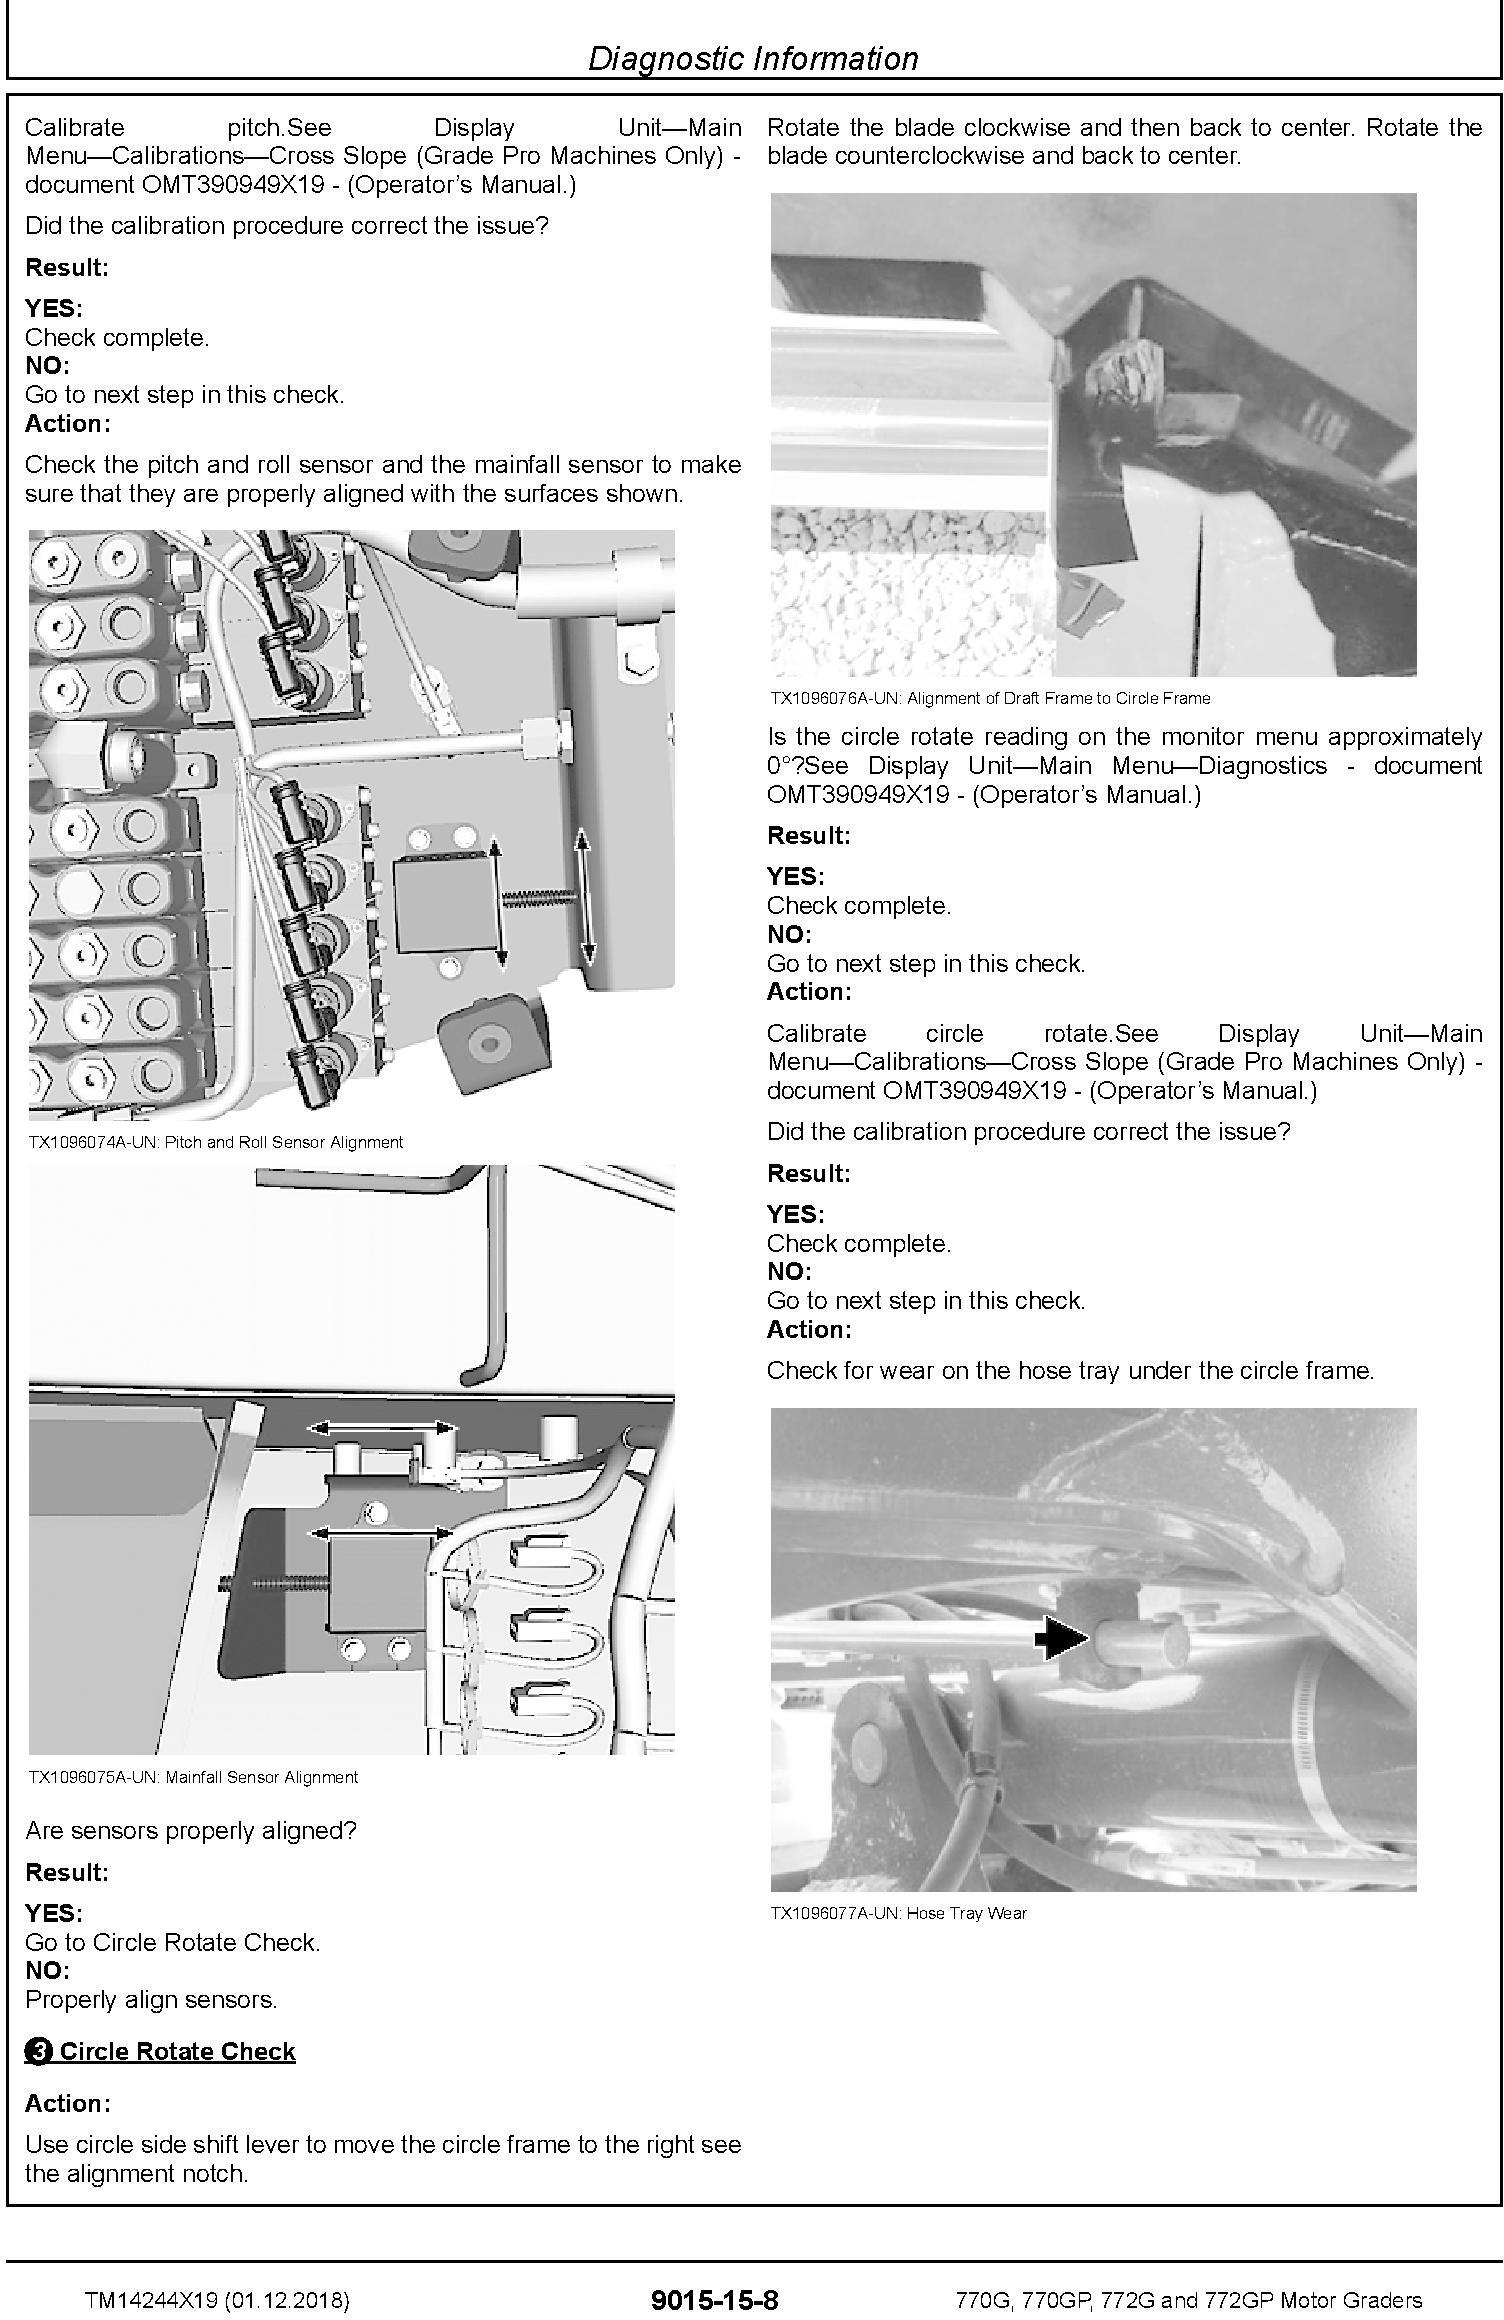 John Deere 770G,770GP, 772G,772GP (SN.F680878-,L700954) Motor Graders Diagnostic Manual (TM14244X19) - 2